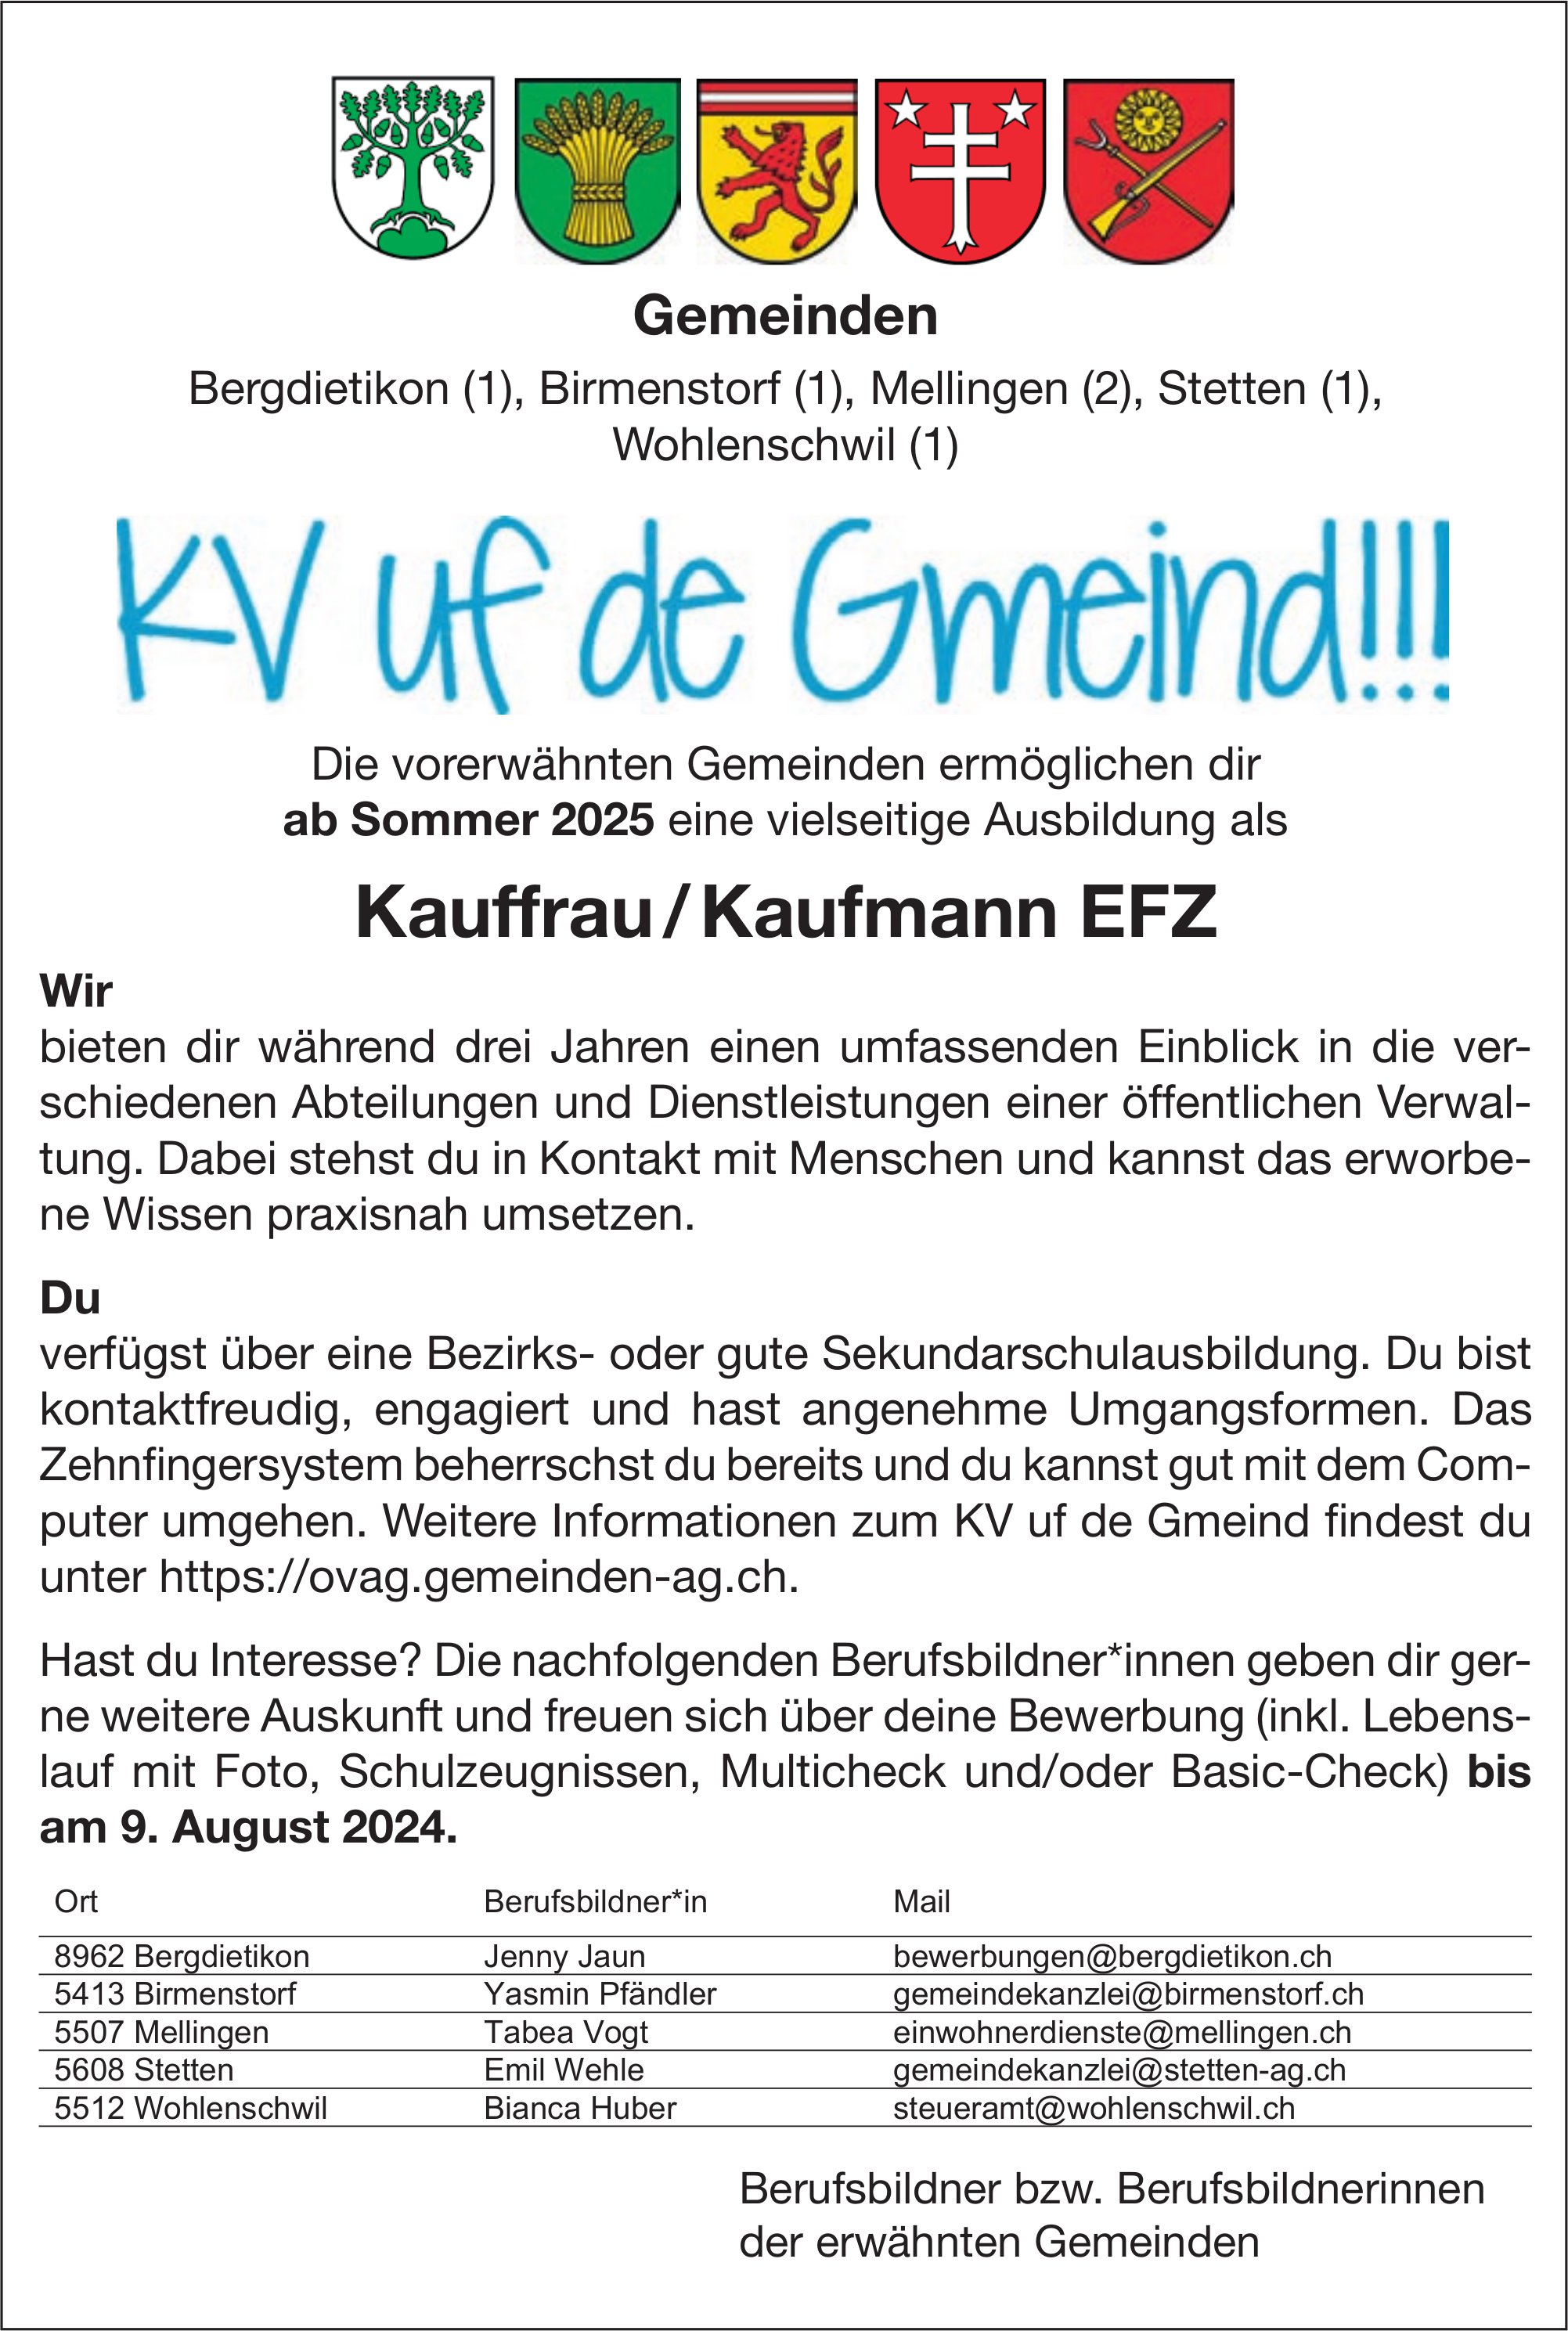 Lehrstellen als Kauffrau / Kaufmann EFZ, Gemeinden, Bergdietikon, Birmenstorf,  Mellingen,  Stetten und Wohlenschwil,  zu vergeben